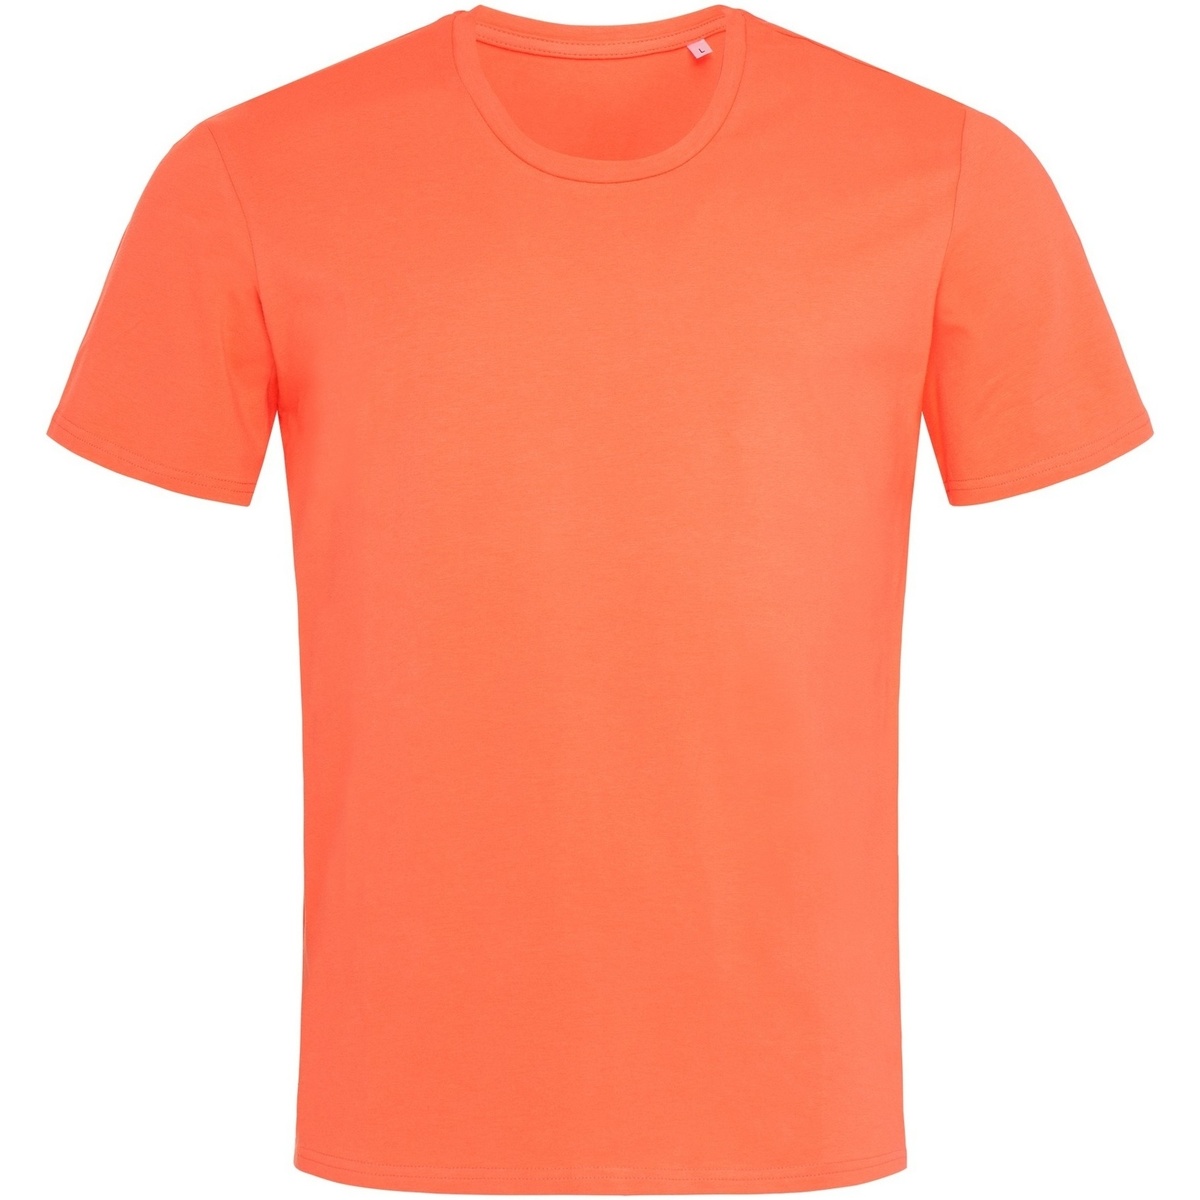 Vêtements Homme T-shirts manches longues Stedman Clive Orange